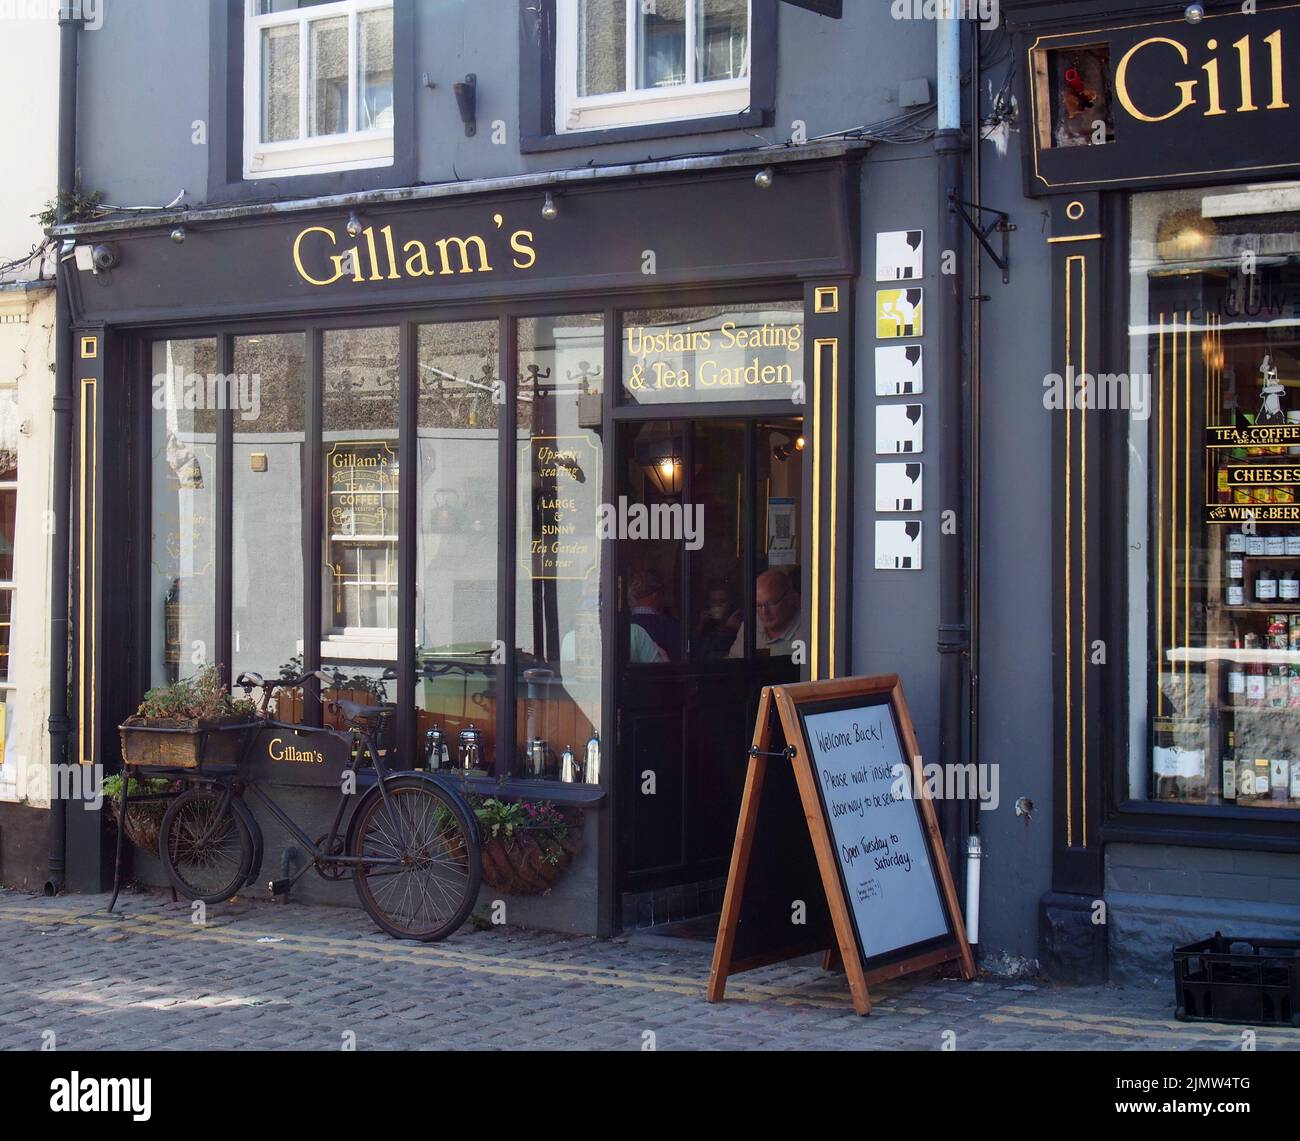 Gillams tea shop and cafe in ulverston cumbria Stock Photo